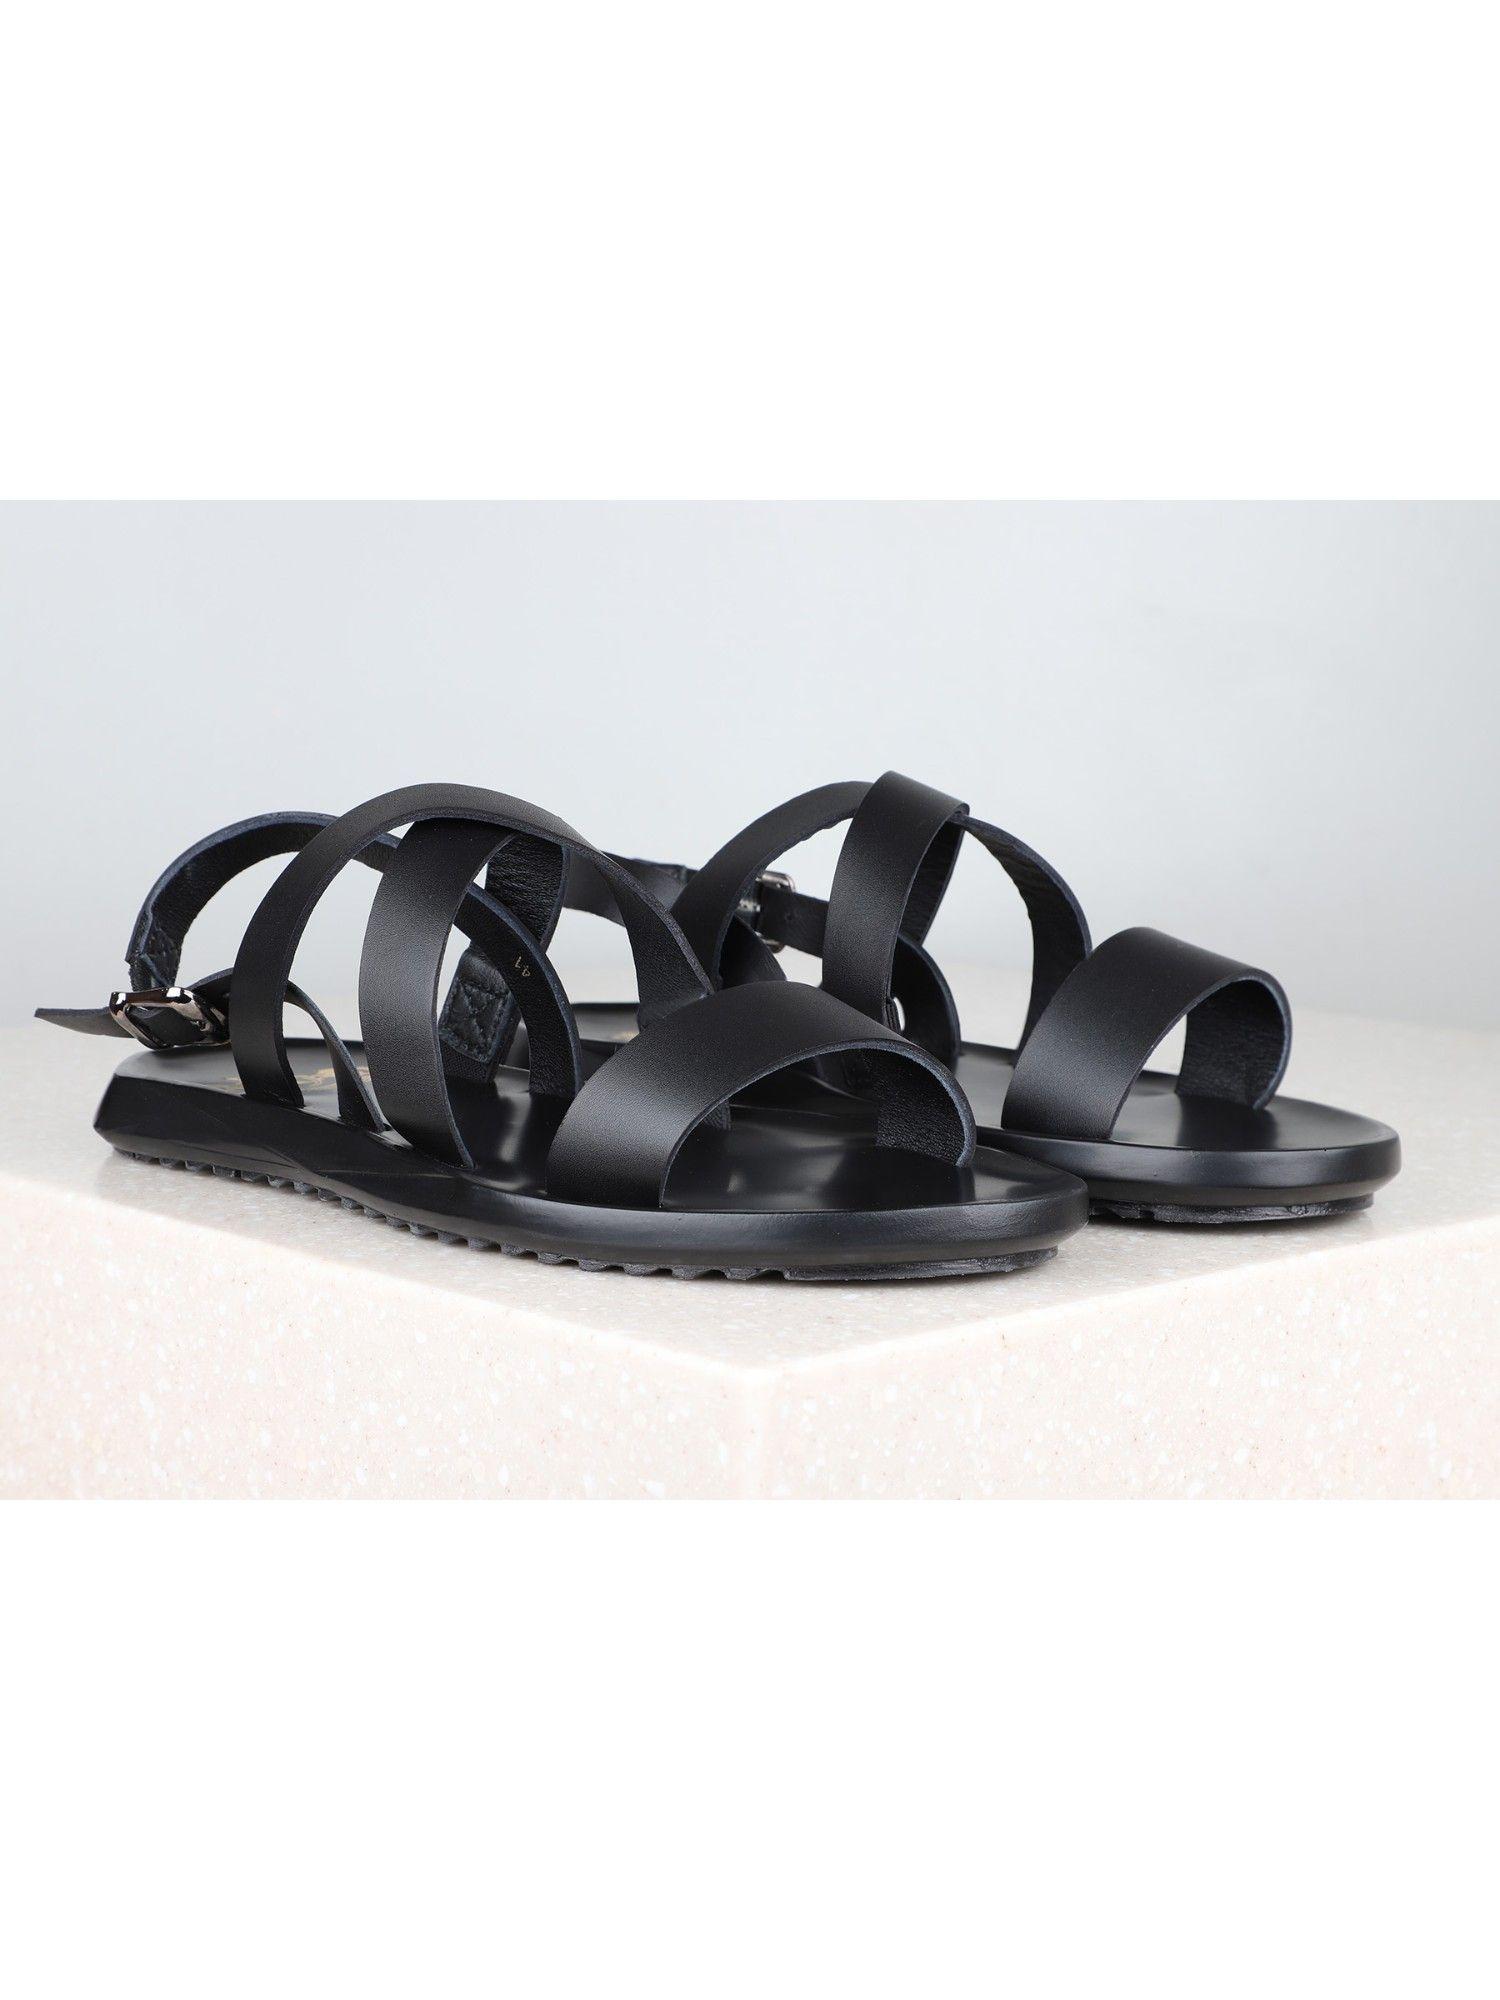 solid-plain black sandals